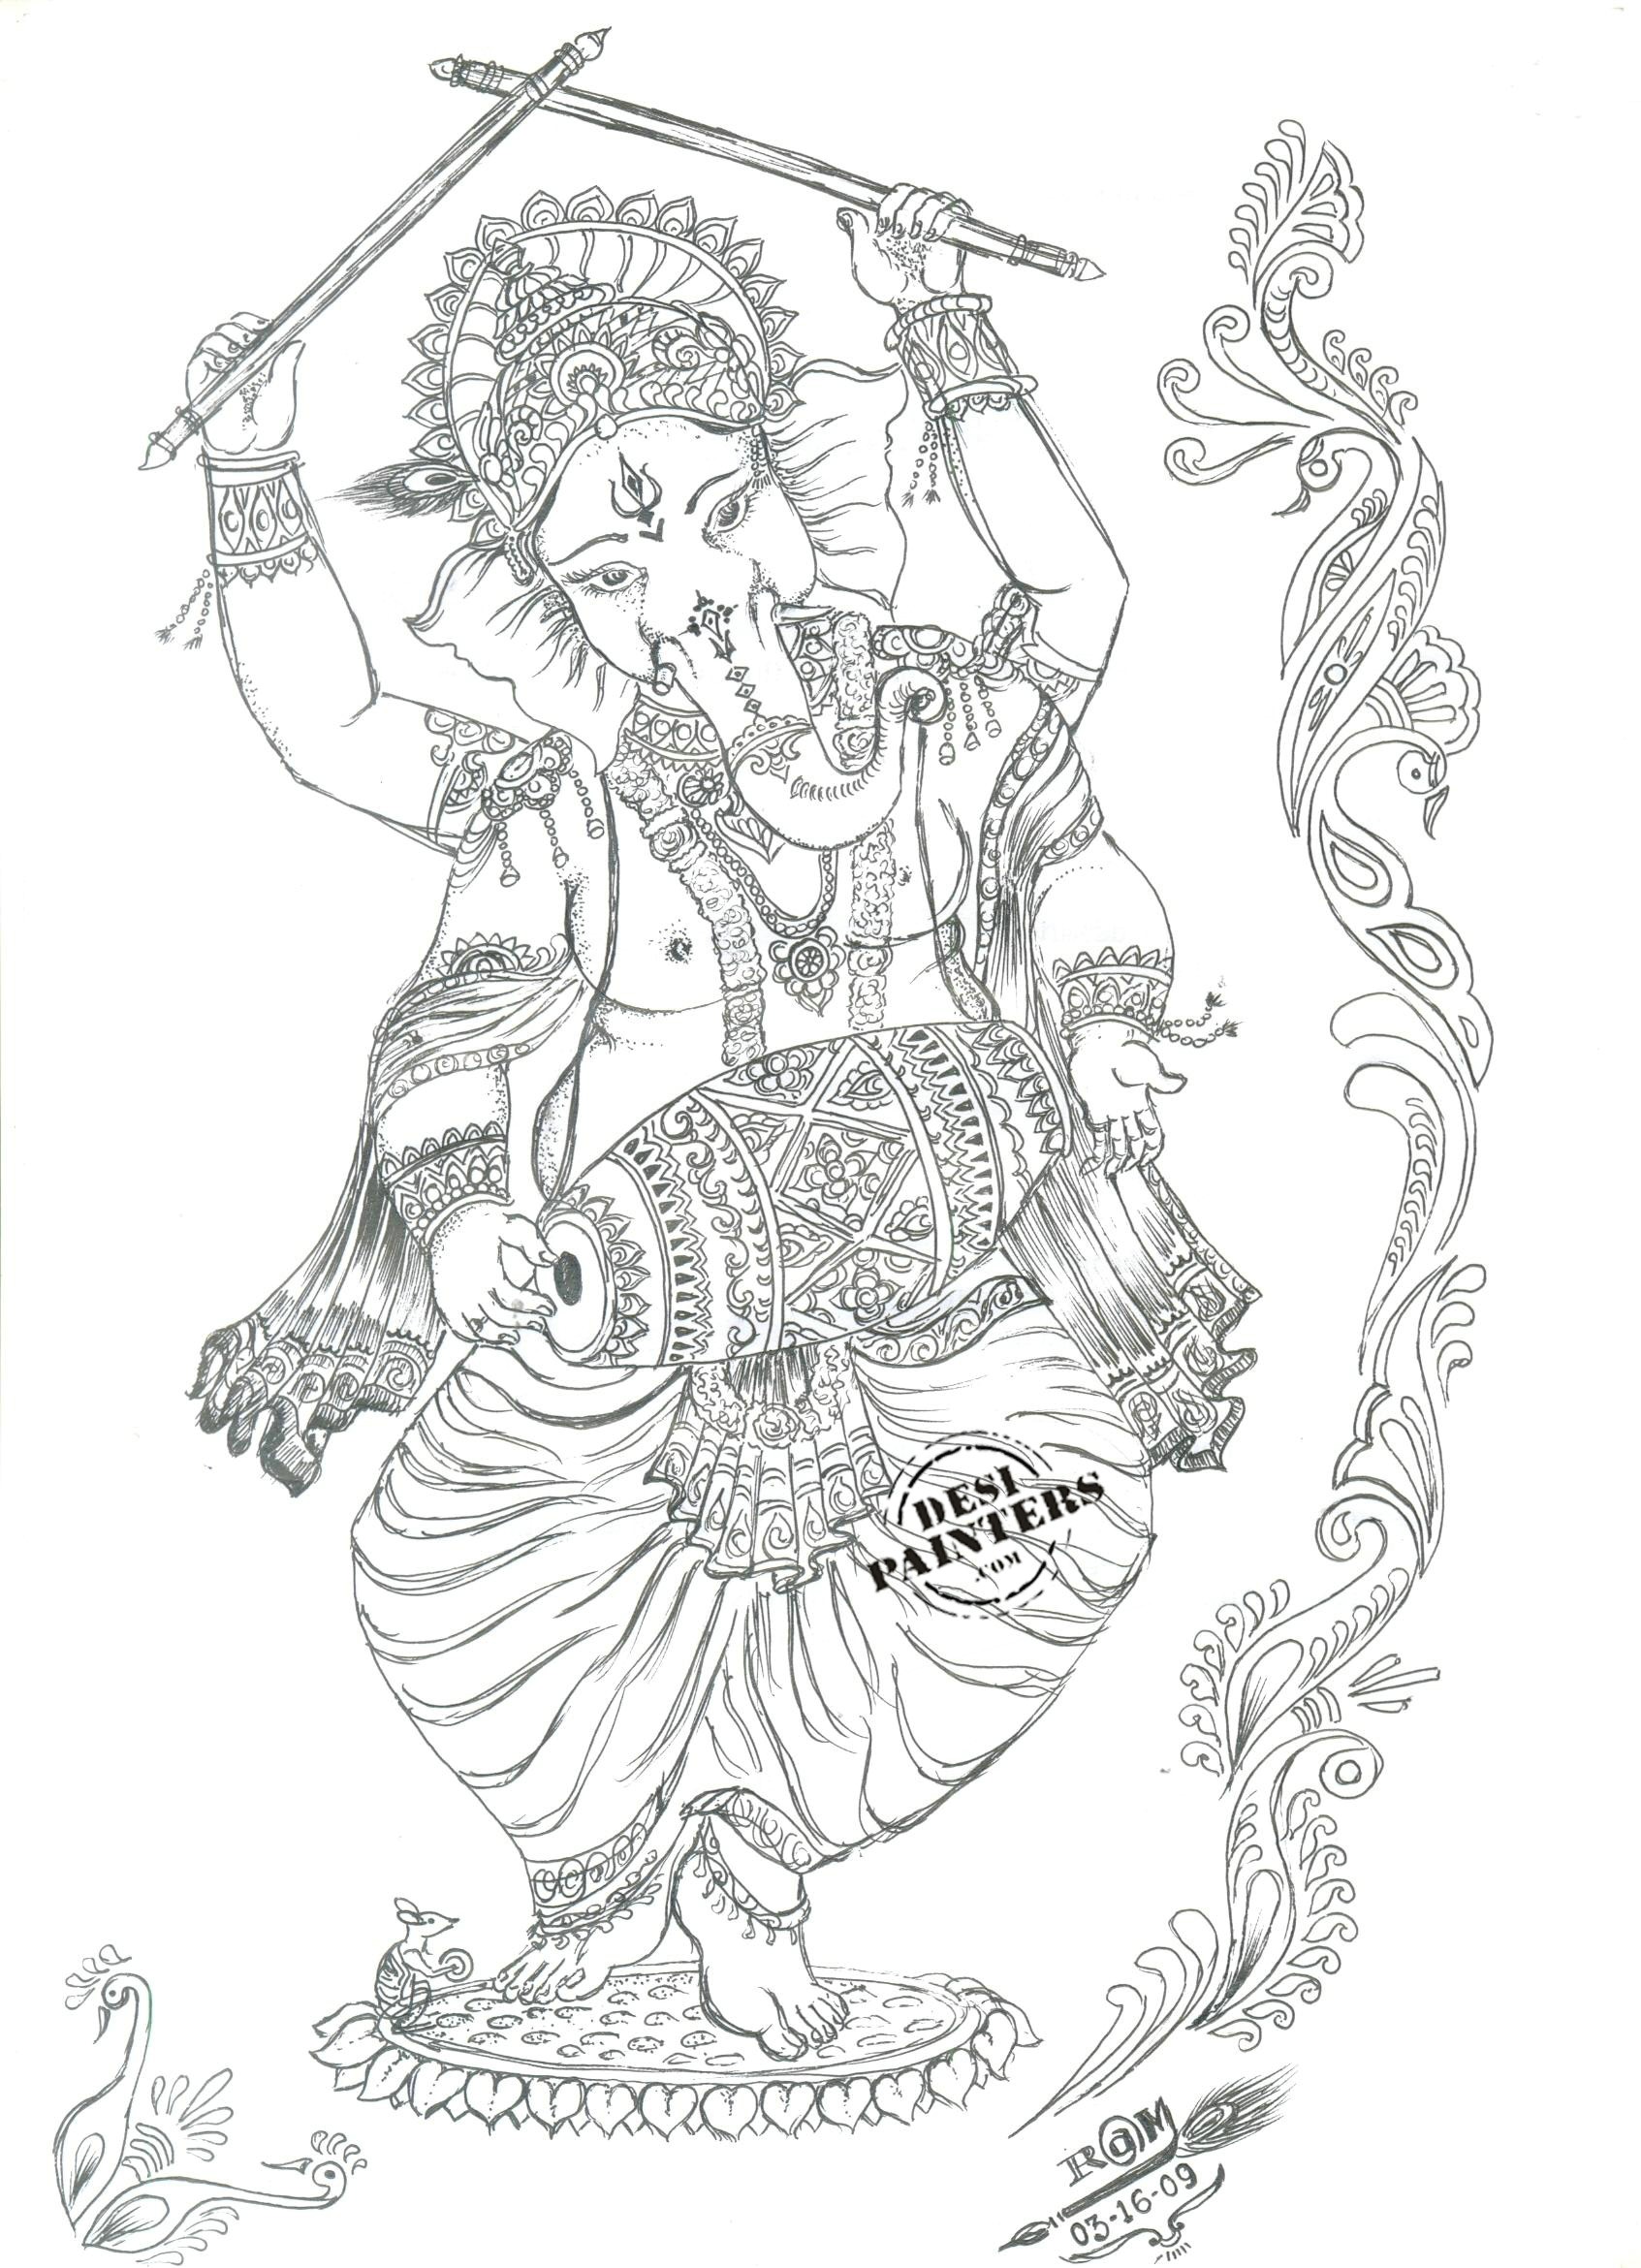 Beautiful Ganesh ji drawing